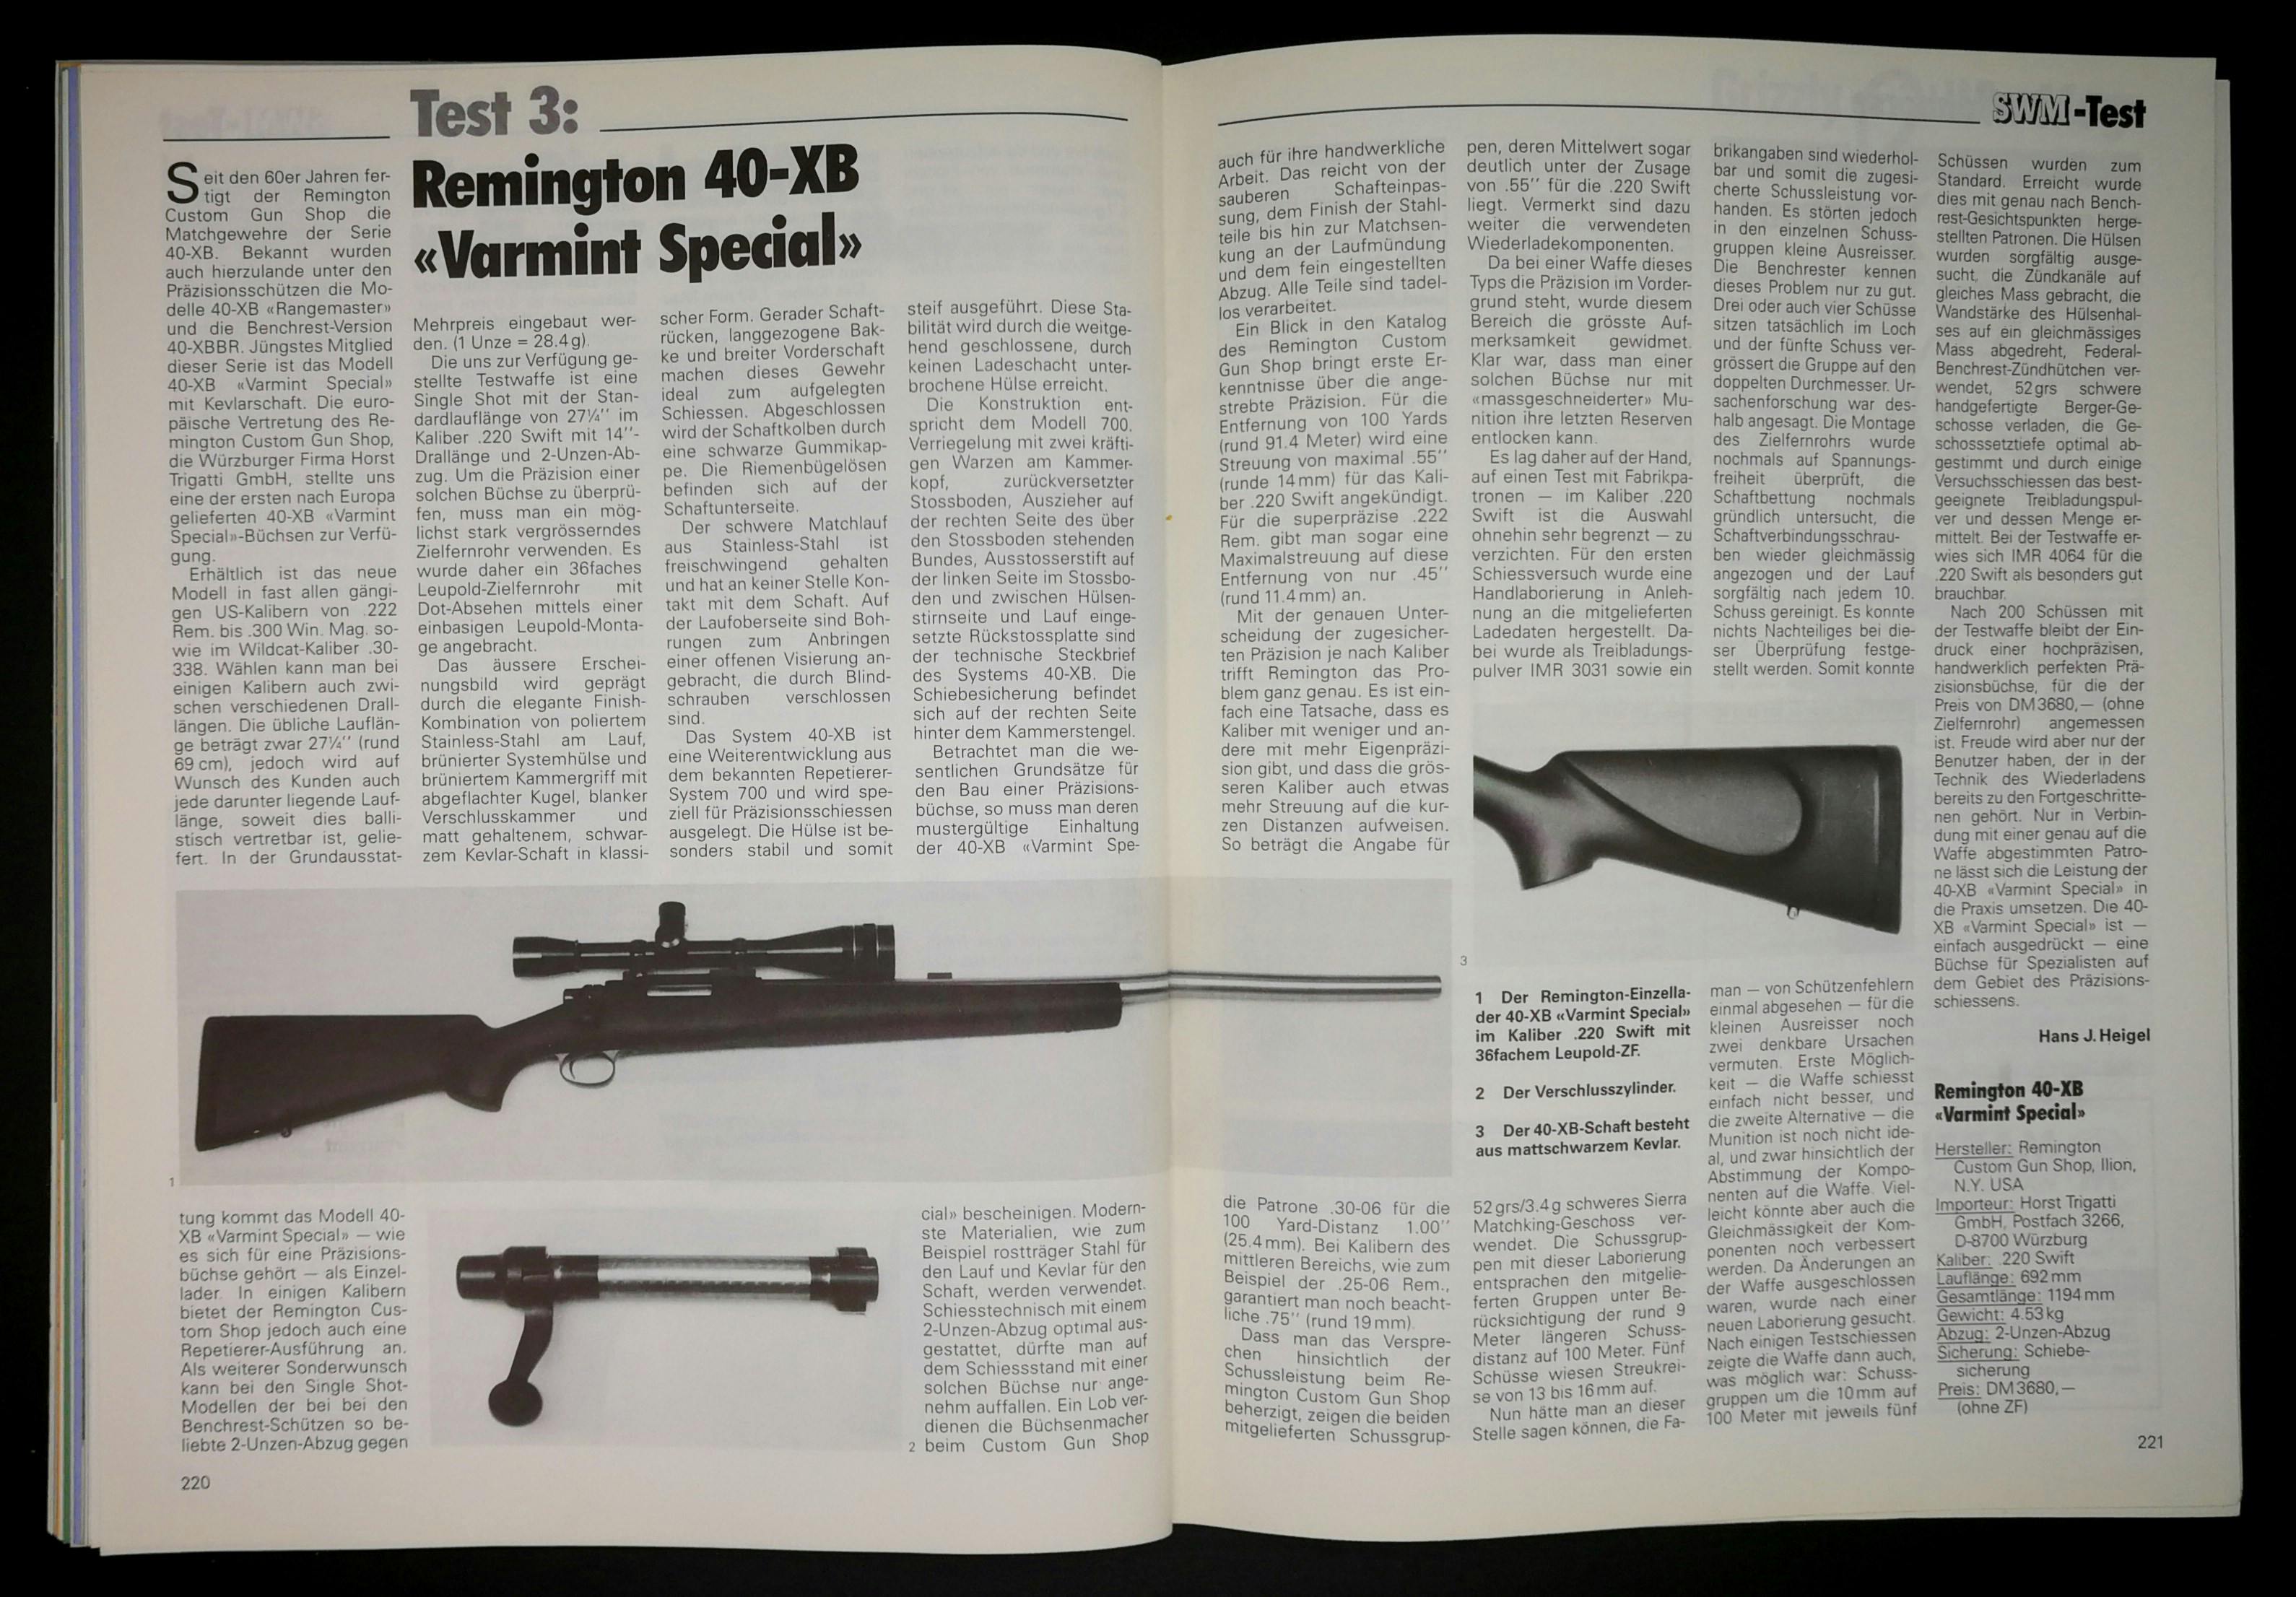 .220 Swift, Kevlarschaft und Leupold-ZF: Die Remington 40-XB Varmint Special
